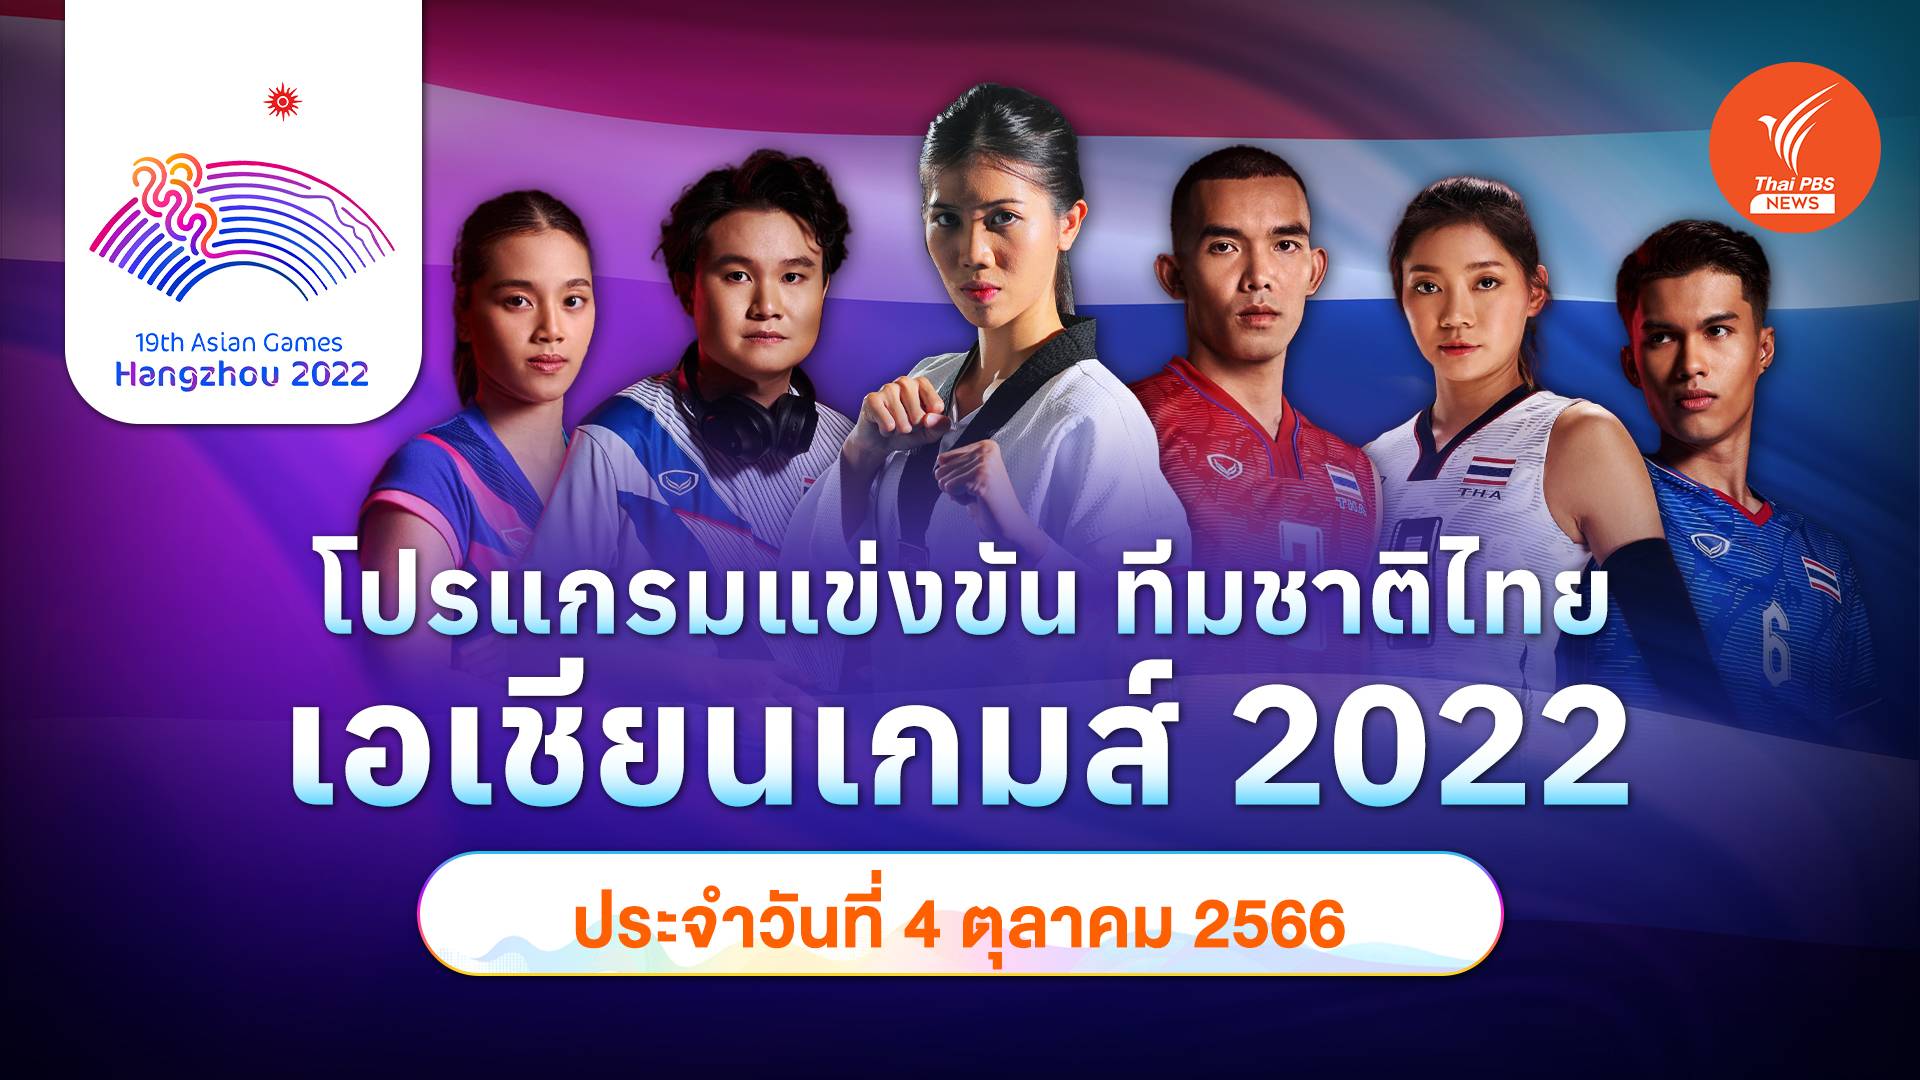 โปรแกรมการแข่งขัน เอเชียนเกมส์ 2022 ทัพนักกีฬาไทย วันที่ 4 ต.ค.2566